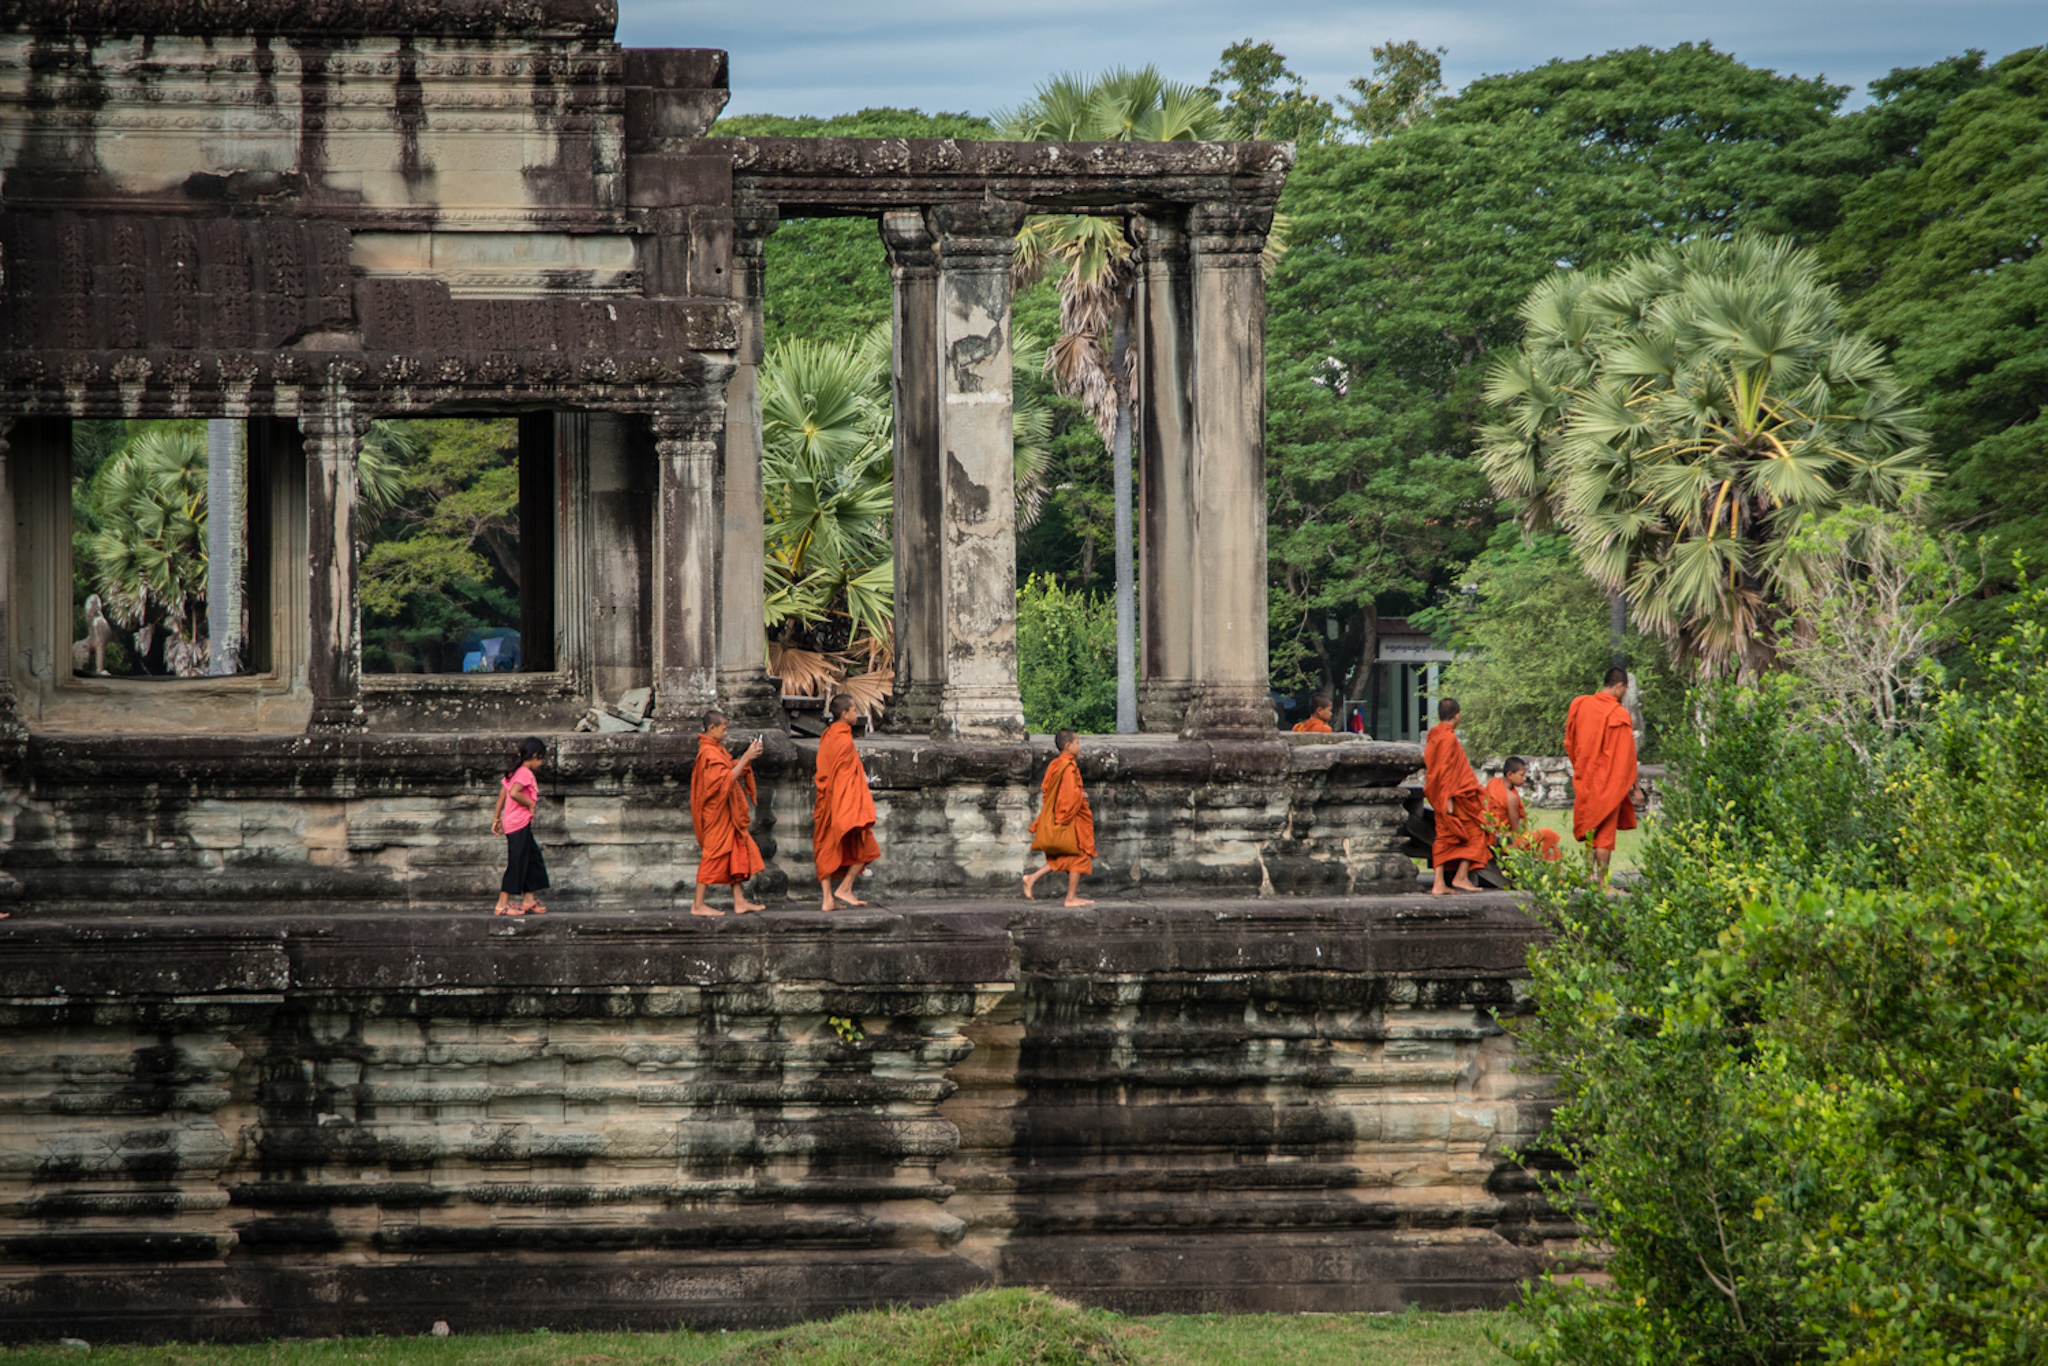 Cambodia_Angkor Wat monks_1_Klinkhamer photo